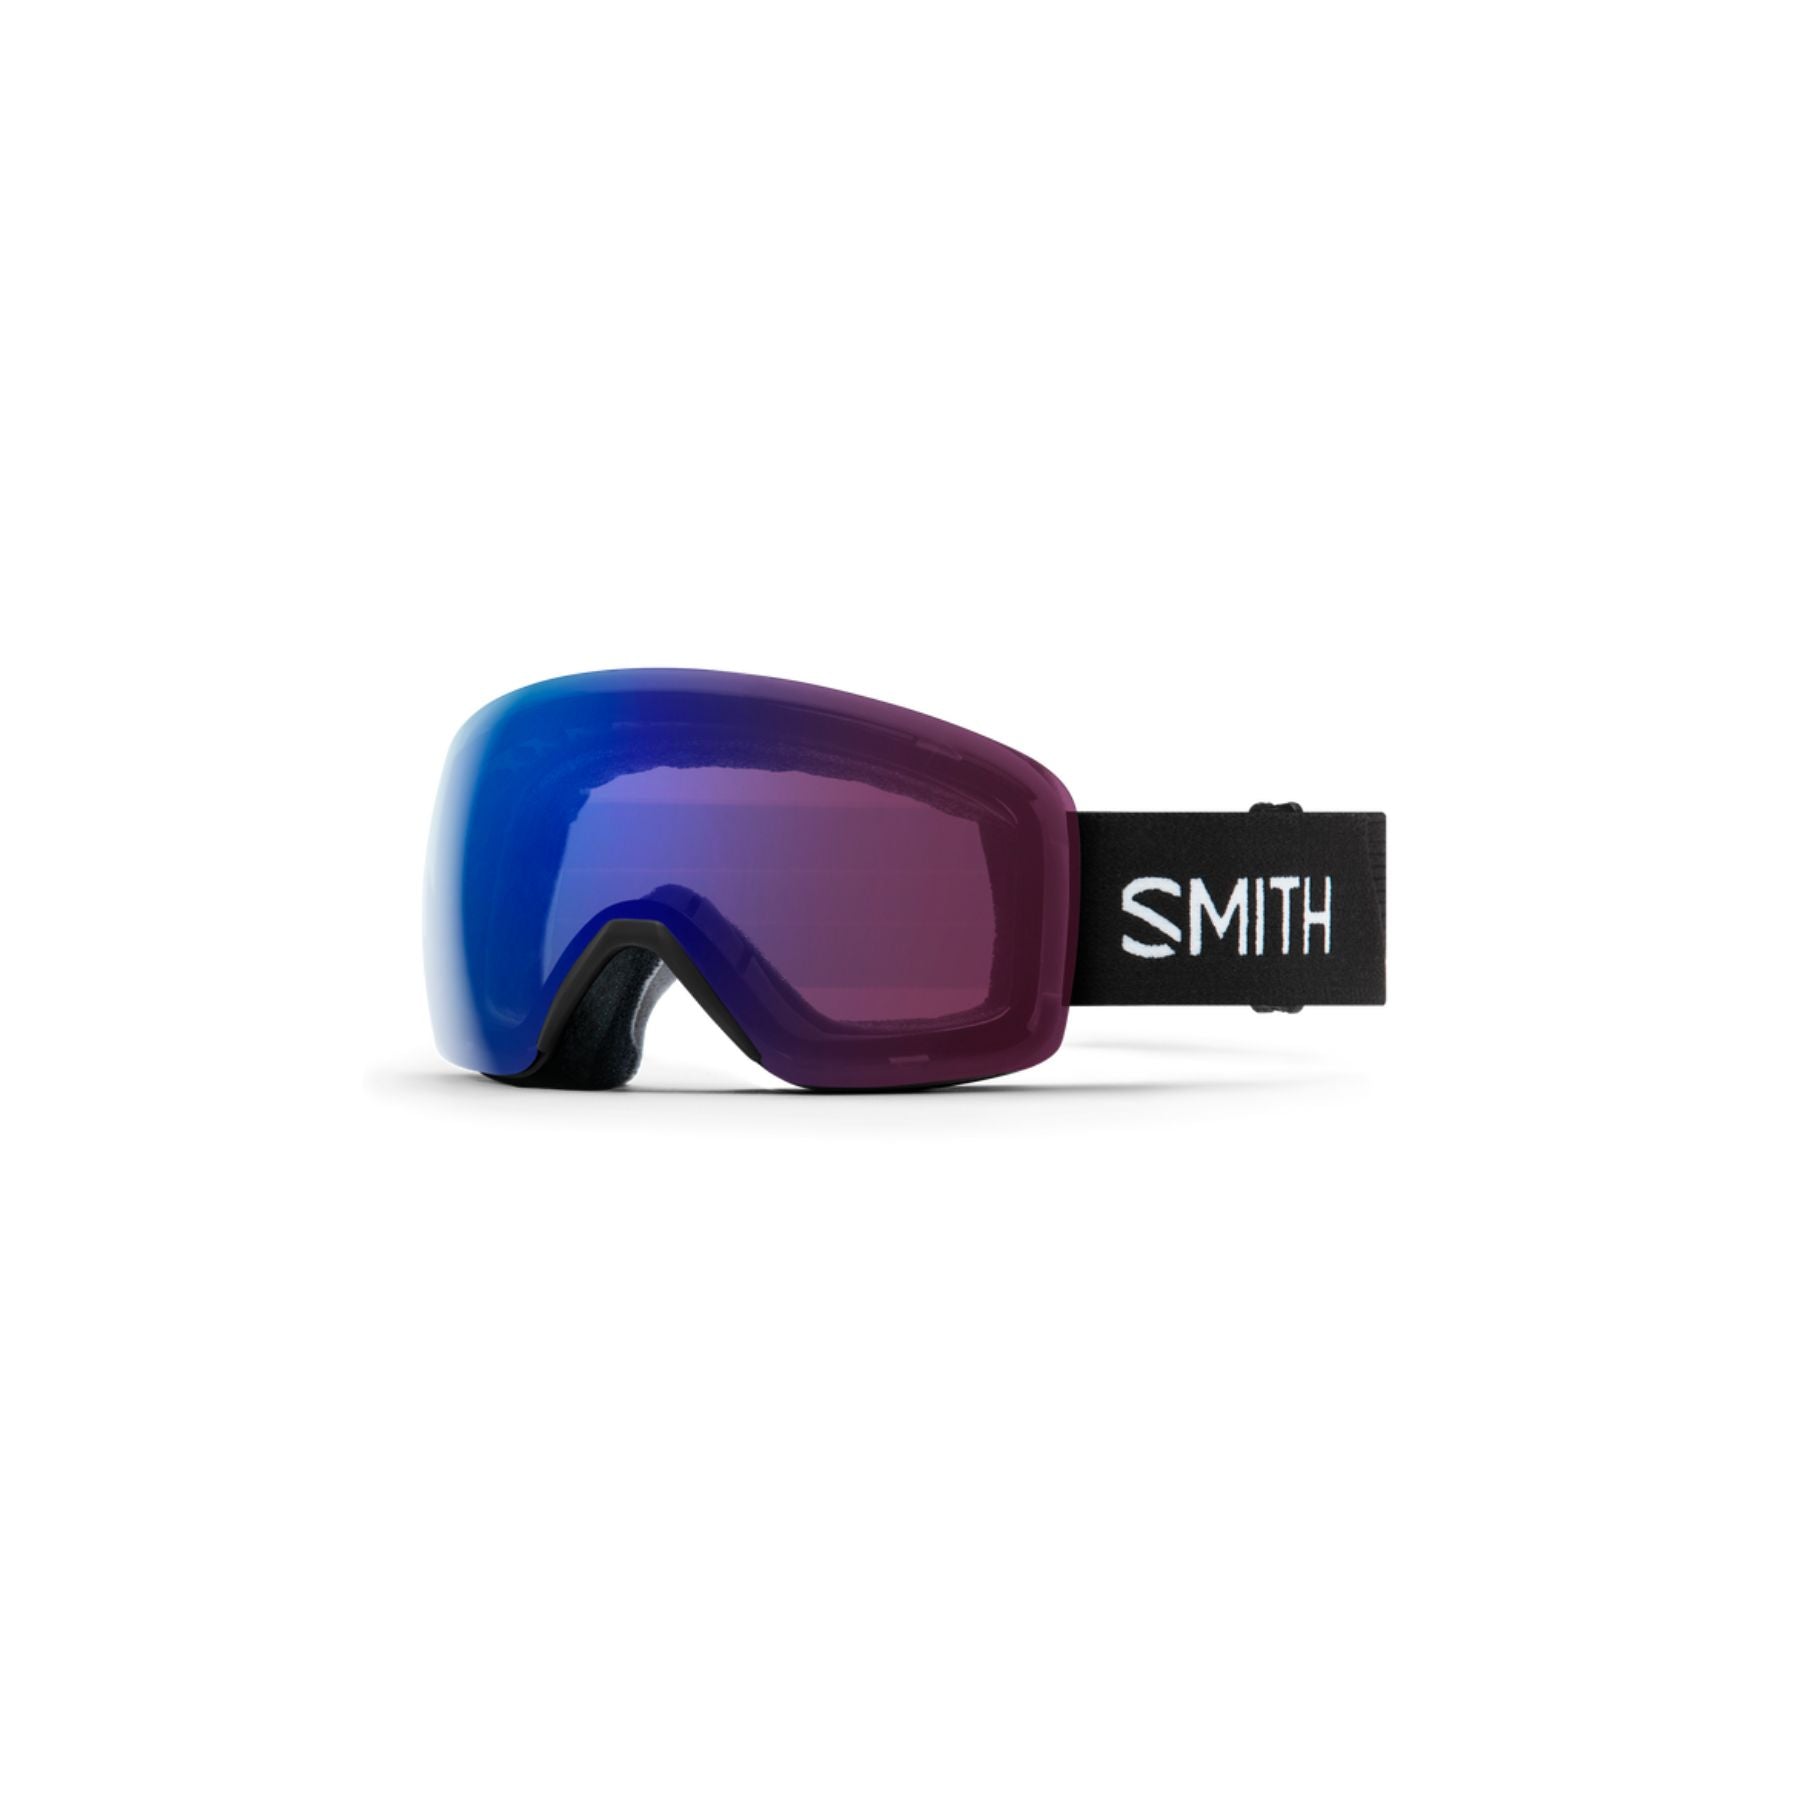 Smith Skyline Goggles in Black